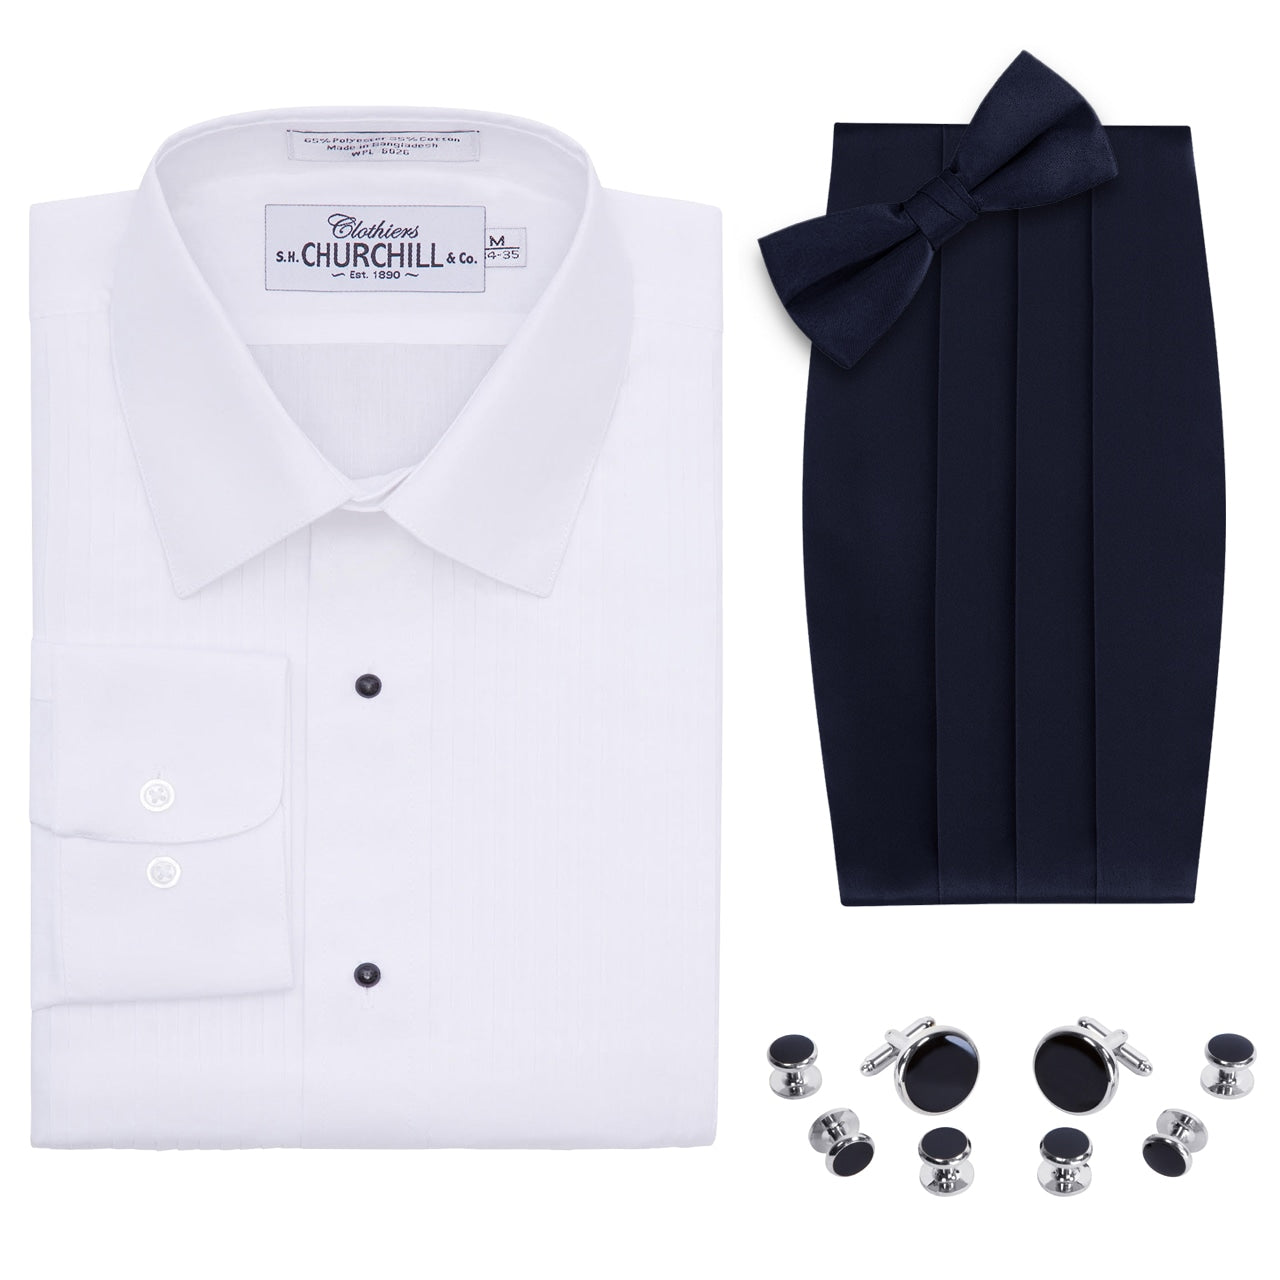 Laydown Collar Tuxedo Shirt, Cummerbund, Bow Tie, Cufflink & Studs Set